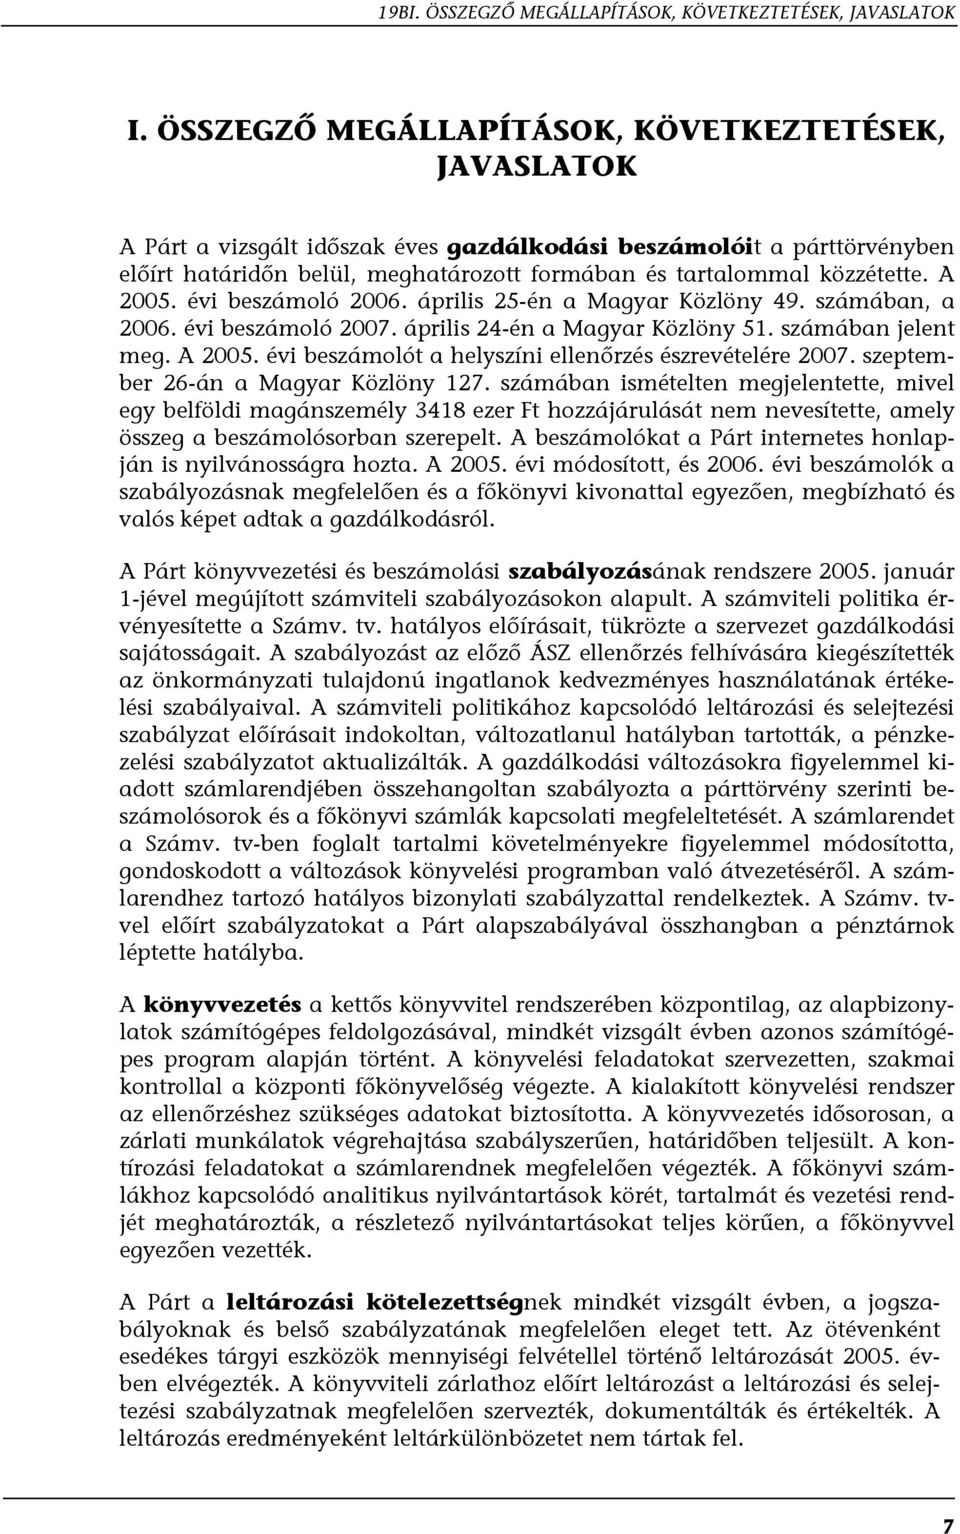 A 2005. évi beszámoló 2006. április 25-én a Magyar Közlöny 49. számában, a 2006. évi beszámoló 2007. április 24-én a Magyar Közlöny 51. számában jelent meg. A 2005.